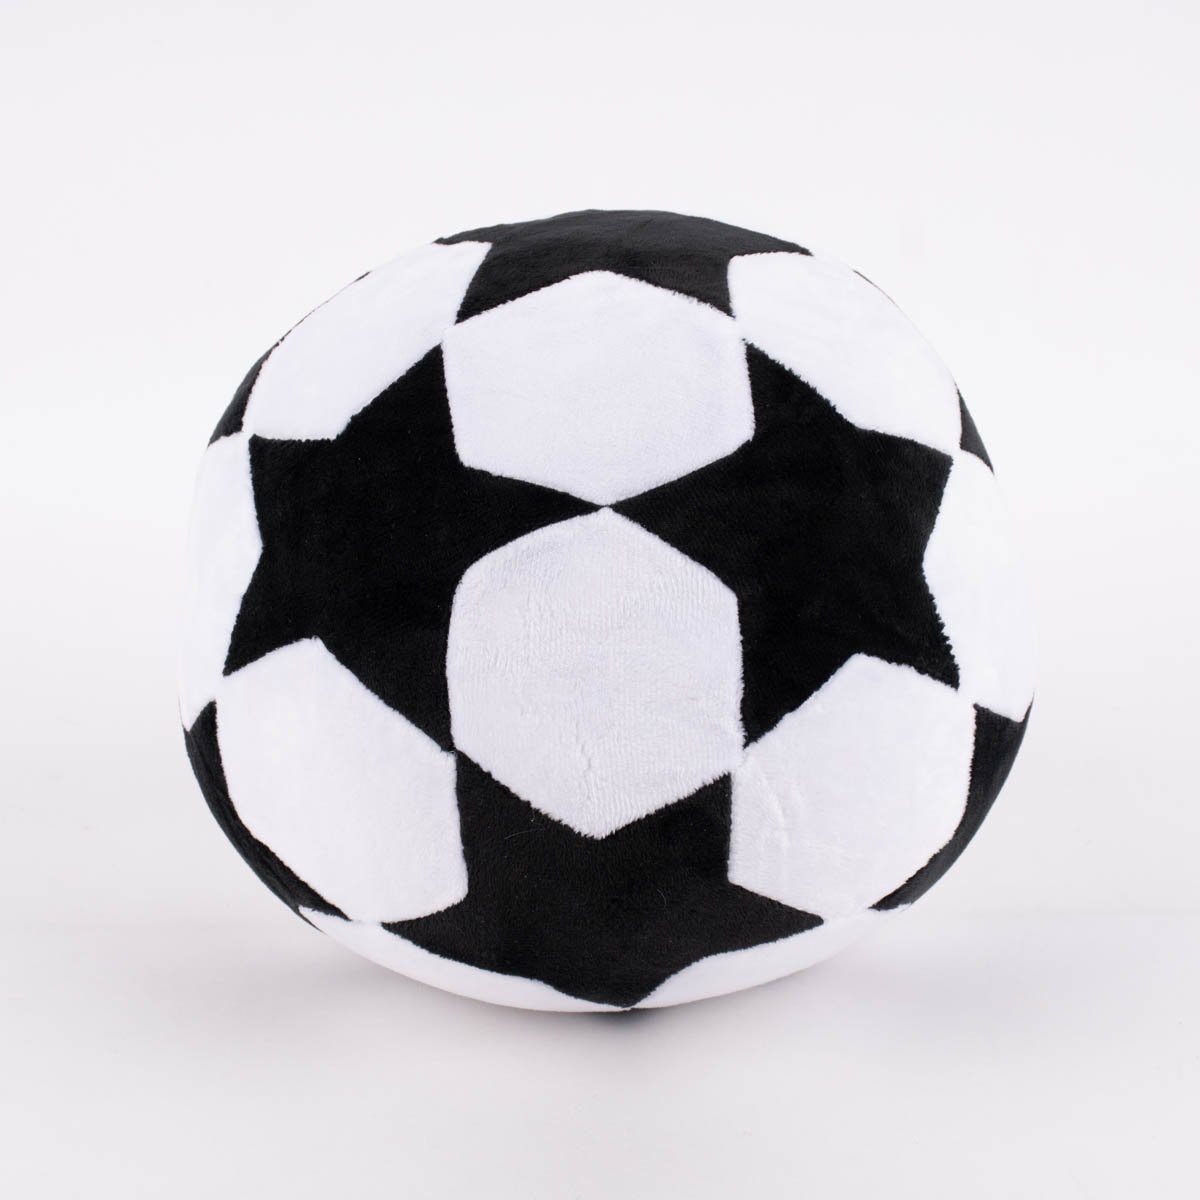 SCHÖNER LEBEN. Fellkissen Deko Kissen Fußball mit Sternmuster rund schwarz weiß 25x25cm